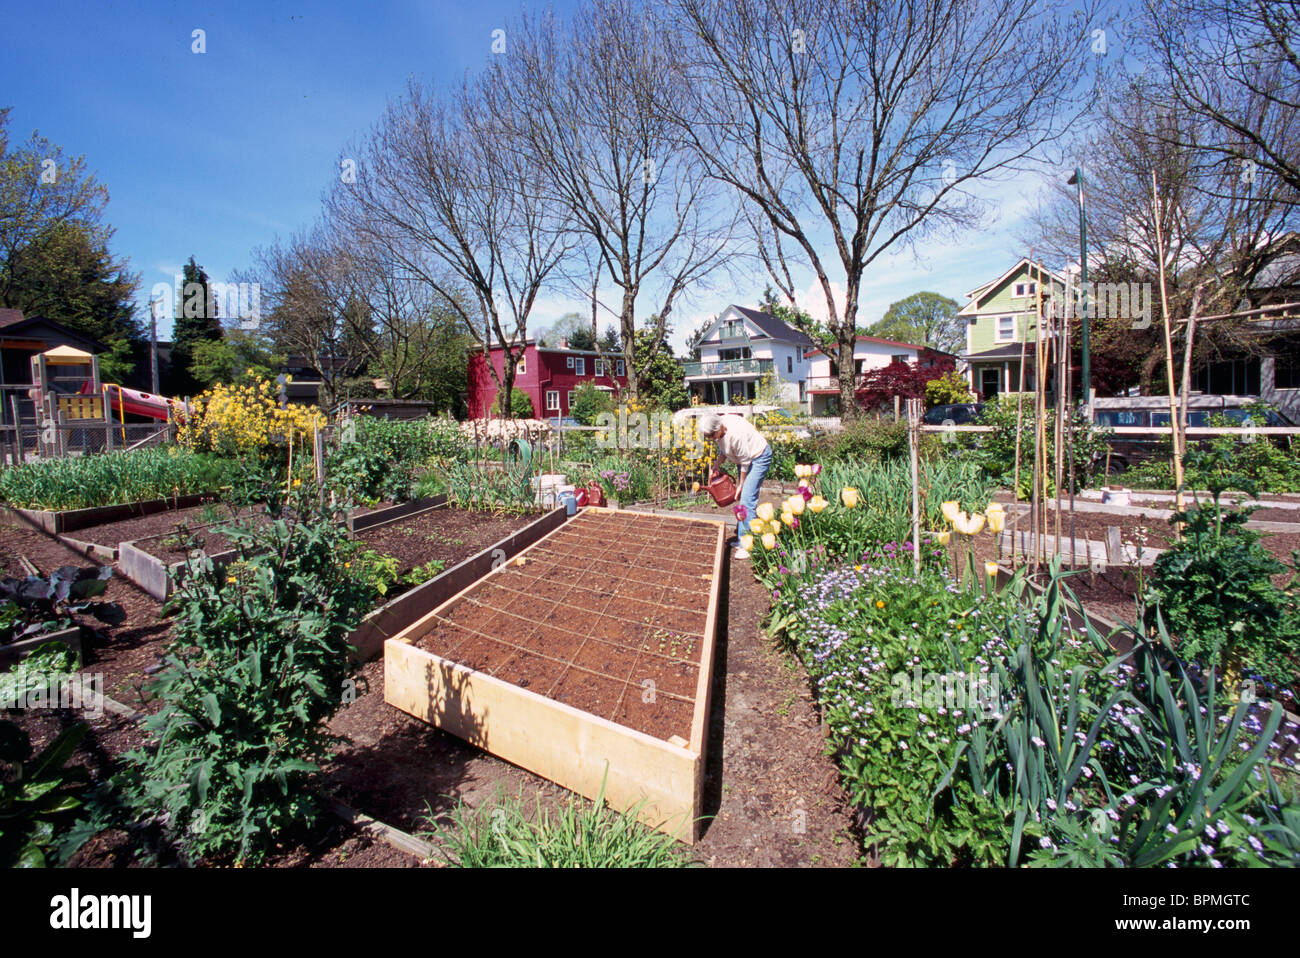 Jardin communautaire, les jardins urbains, Vancouver, BC - Colombie-Britannique, Canada - Ville durable, allotissement Jardinage pied carré Banque D'Images